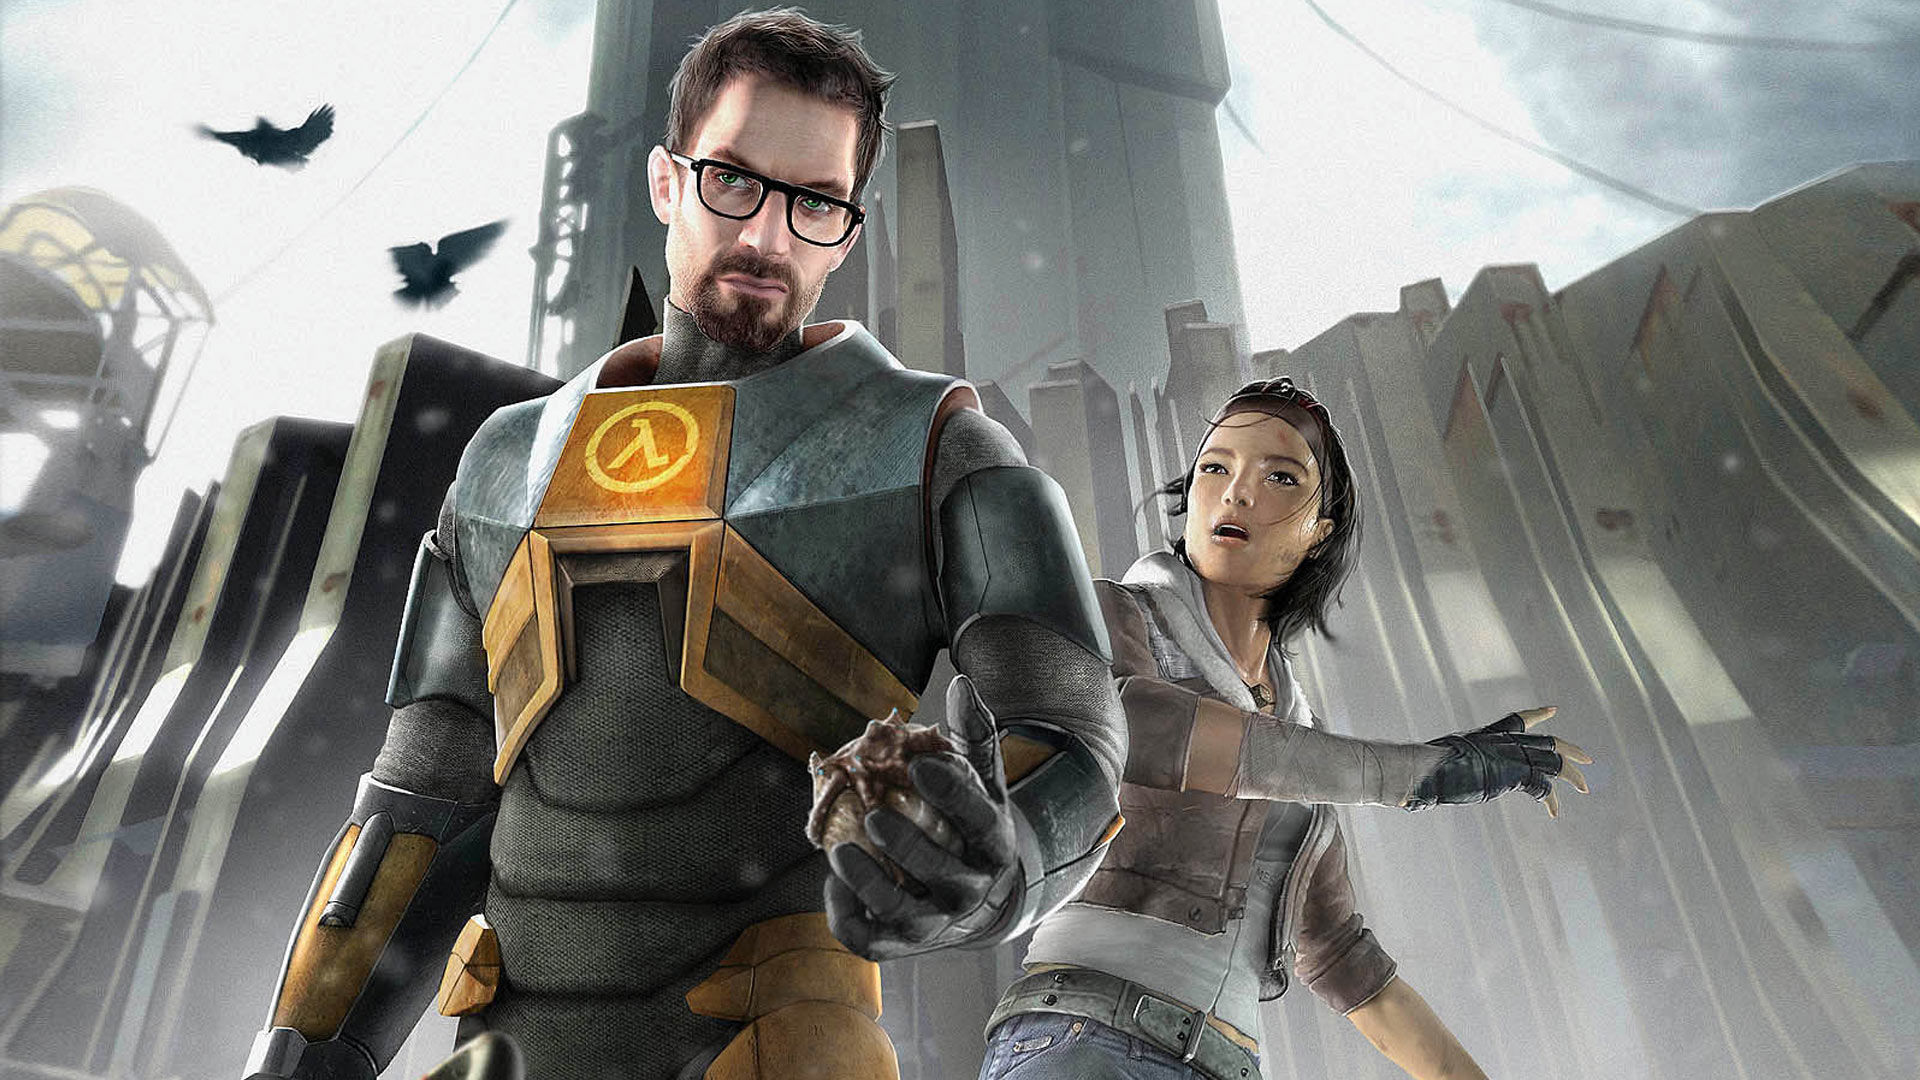 Half-Life 3 Cover Art